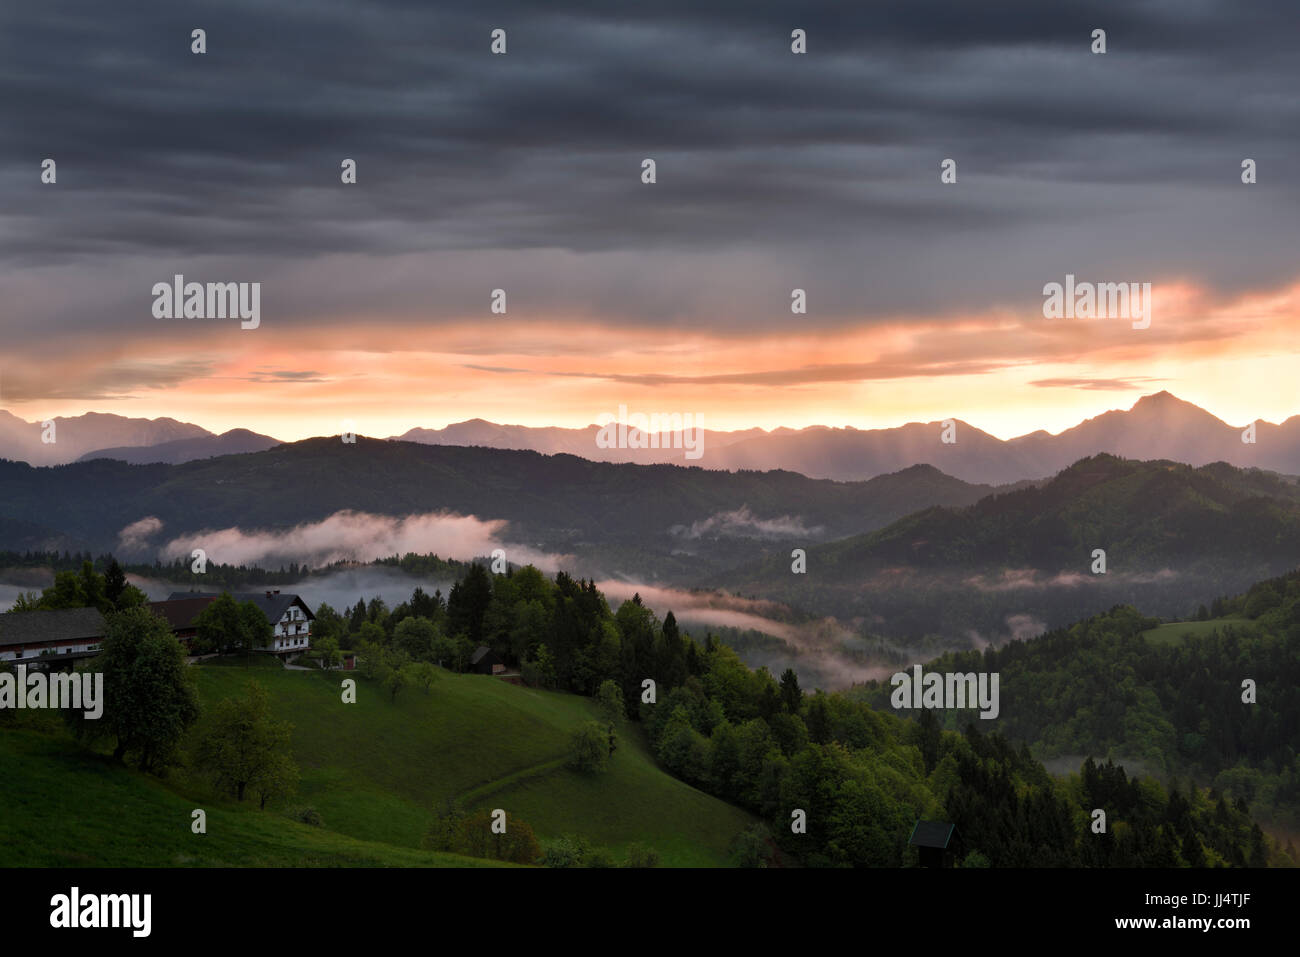 Sonnenaufgang mit Nebel über den Bergen von Kamnik Savinja Alpen mit Storzic Spitze rechts im Skofjelosko Hügel in der Nähe von Ljubljana Slowenien Stockfoto